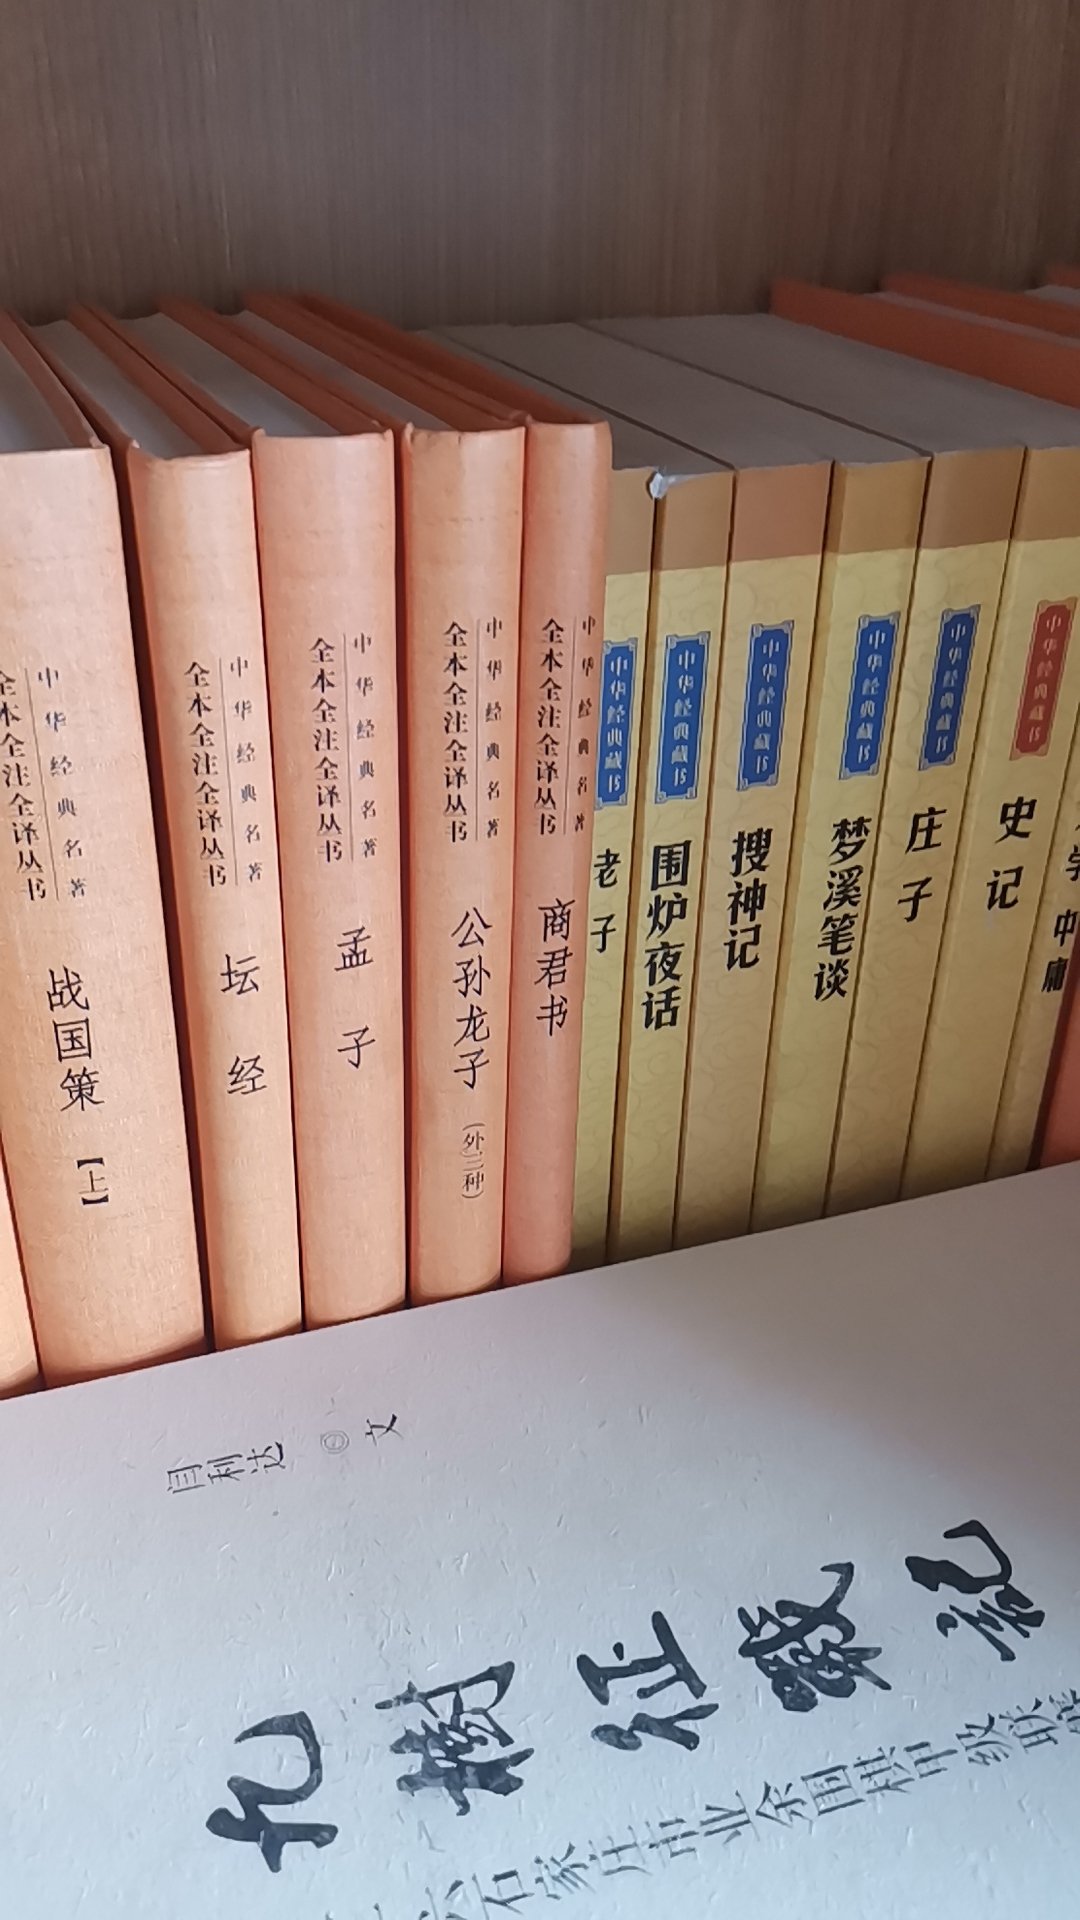 学习中！一直购买中华书局出版的传统书籍！